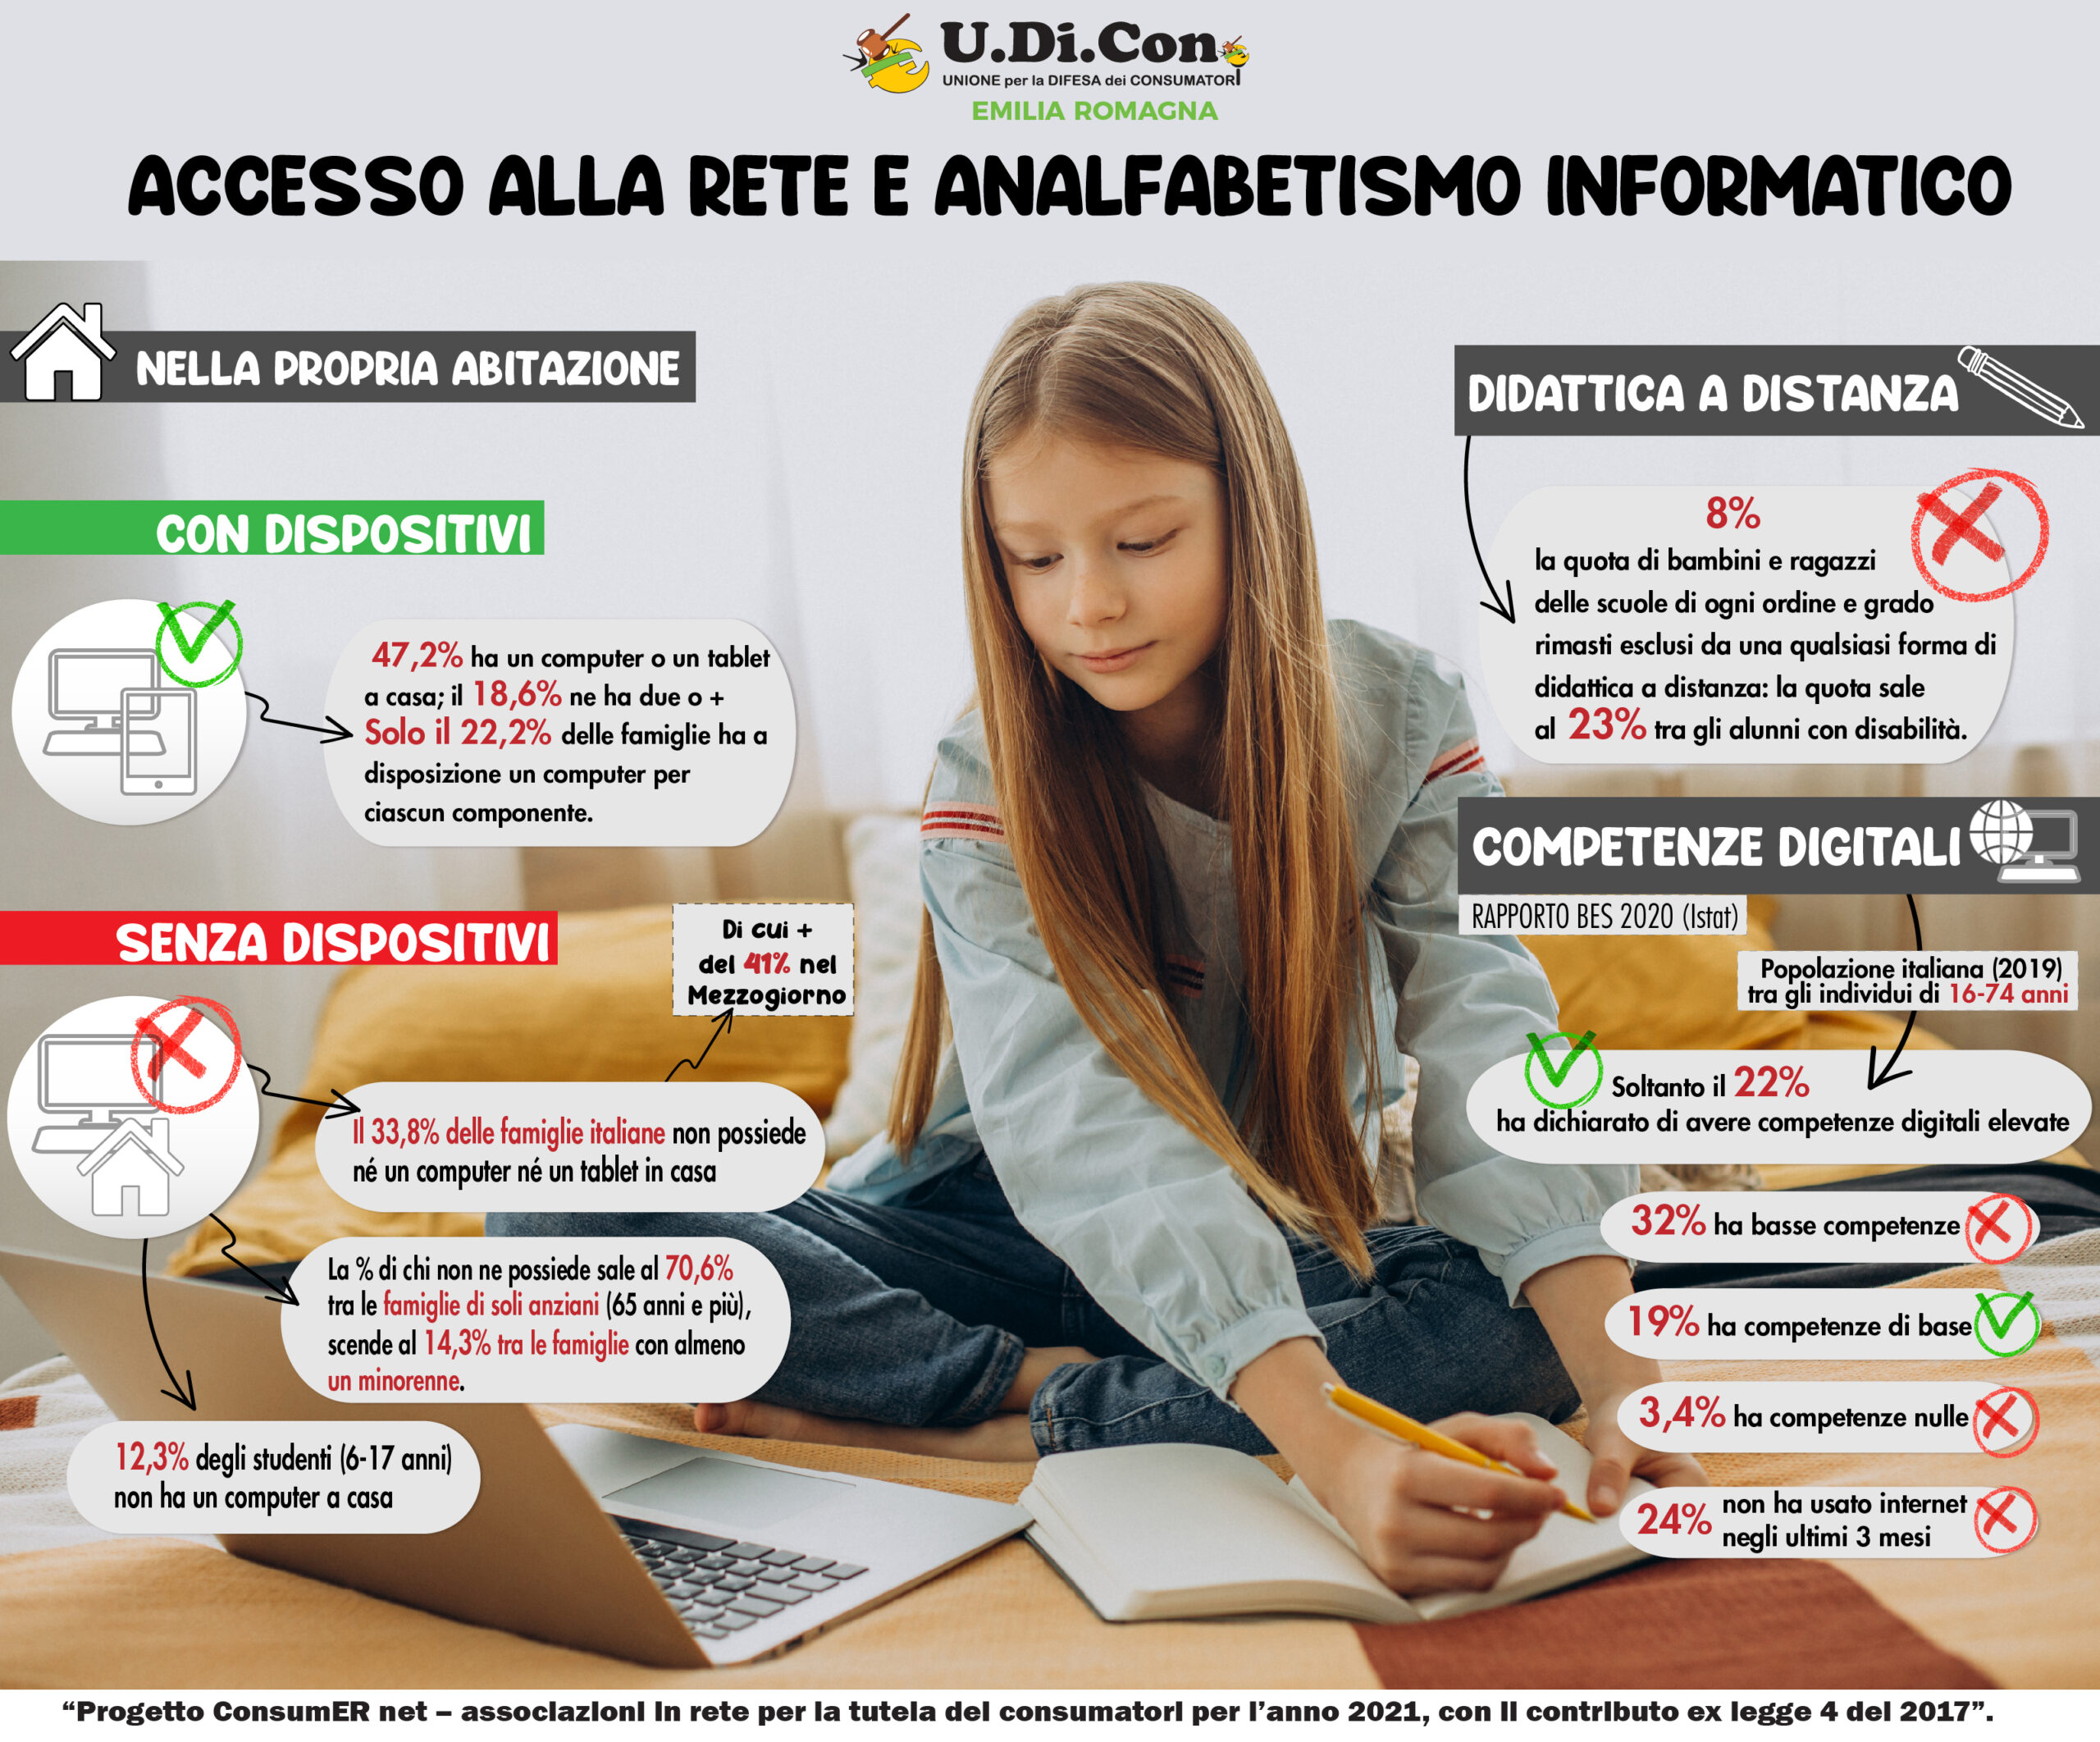 Infografica - Accesso alla rete e analfabetismo informatico